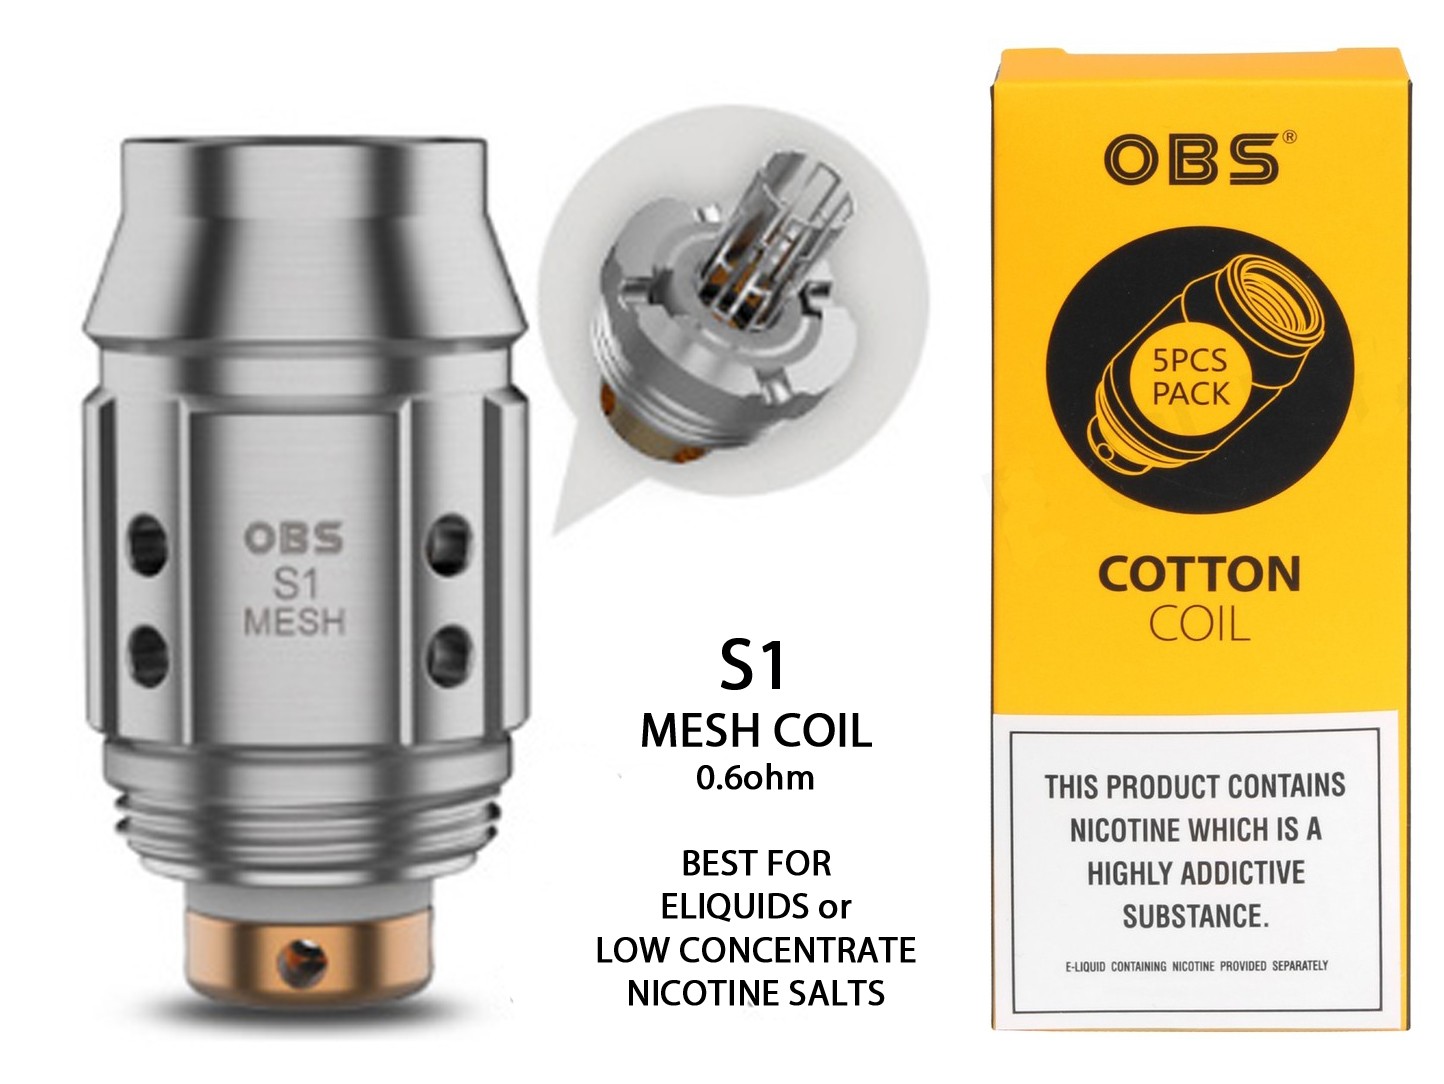 OBS - CUBE MINI COILS (S1)